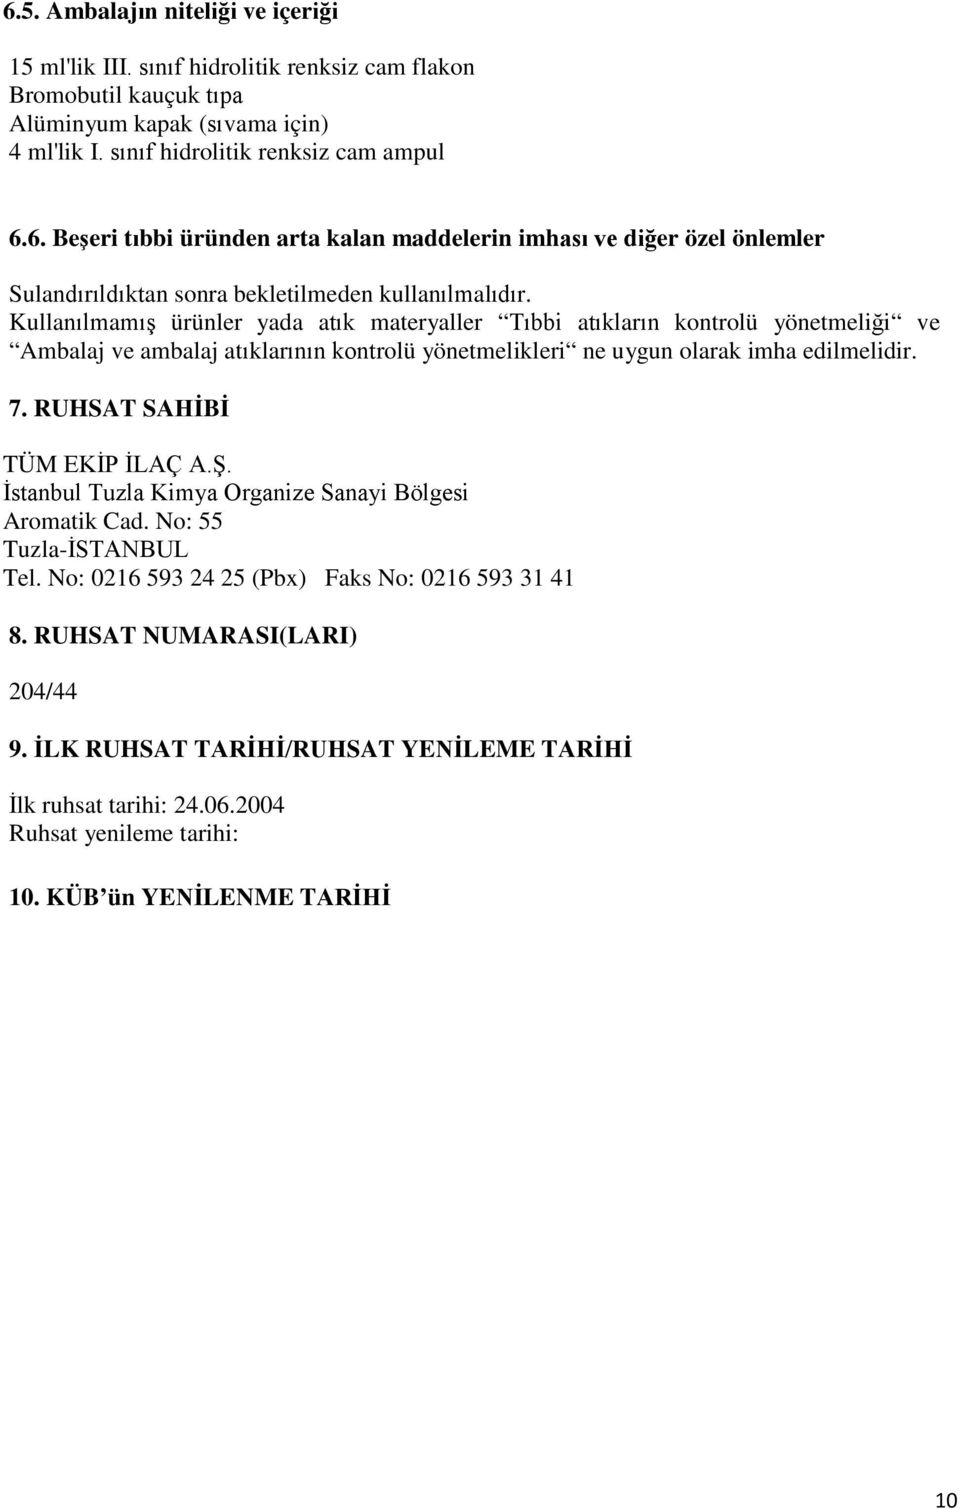 RUHSAT SAHİBİ TÜM EKİP İLAÇ A.Ş. İstanbul Tuzla Kimya Organize Sanayi Bölgesi Aromatik Cad. No: 55 Tuzla-İSTANBUL Tel. No: 0216 593 24 25 (Pbx) Faks No: 0216 593 31 41 8.